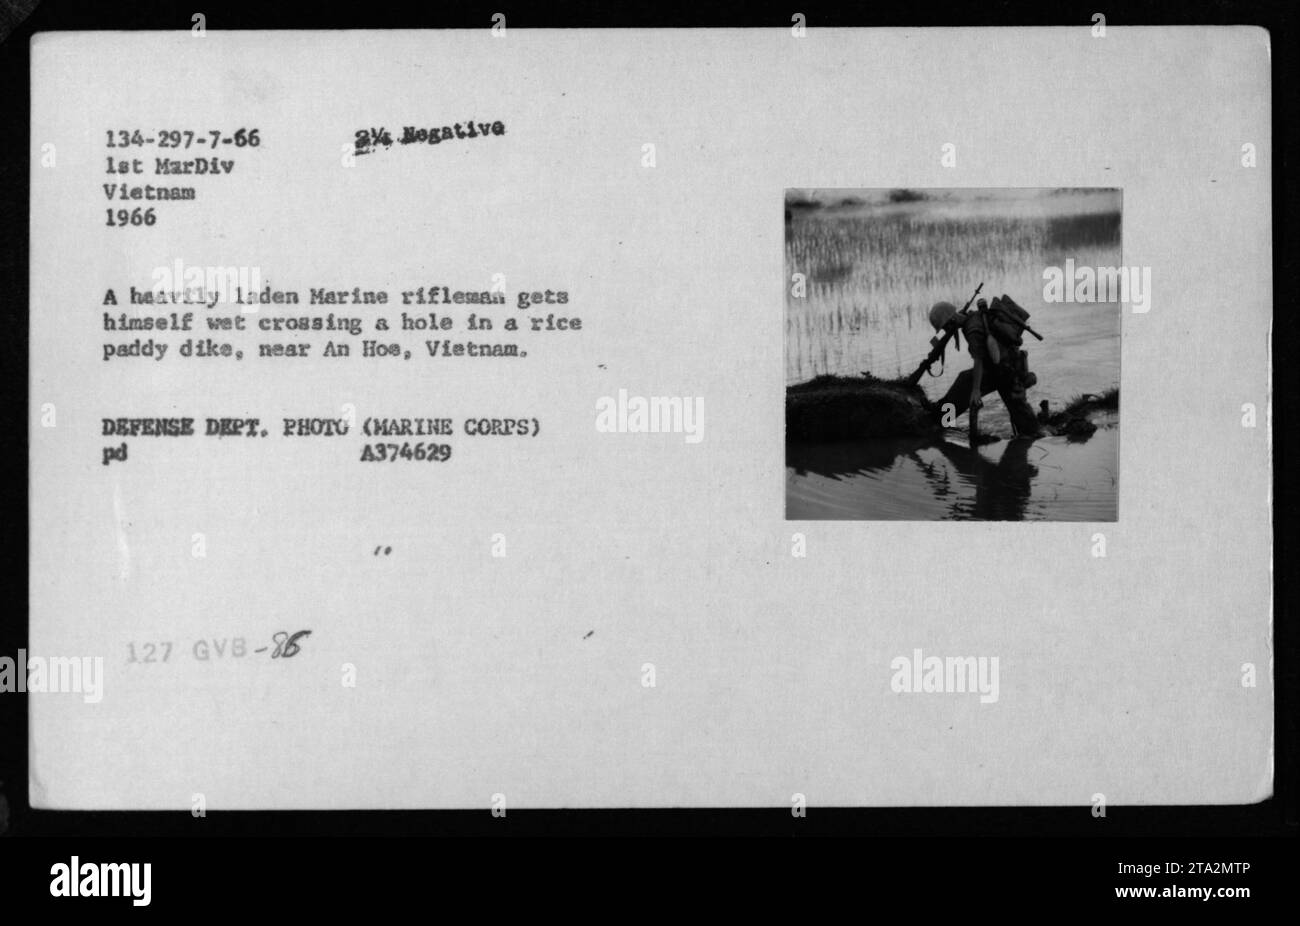 Ein Marineschützer überquert 1966 ein Loch in einem Reisdeich in der Nähe von an Hoe, Vietnam. Das Bild zeigt den Marine, der mit Ausrüstung voll beladen ist und nass wird. Dieses Foto wurde während der Kampfeinsätze der 1. Marine Division in Vietnam aufgenommen. Stockfoto